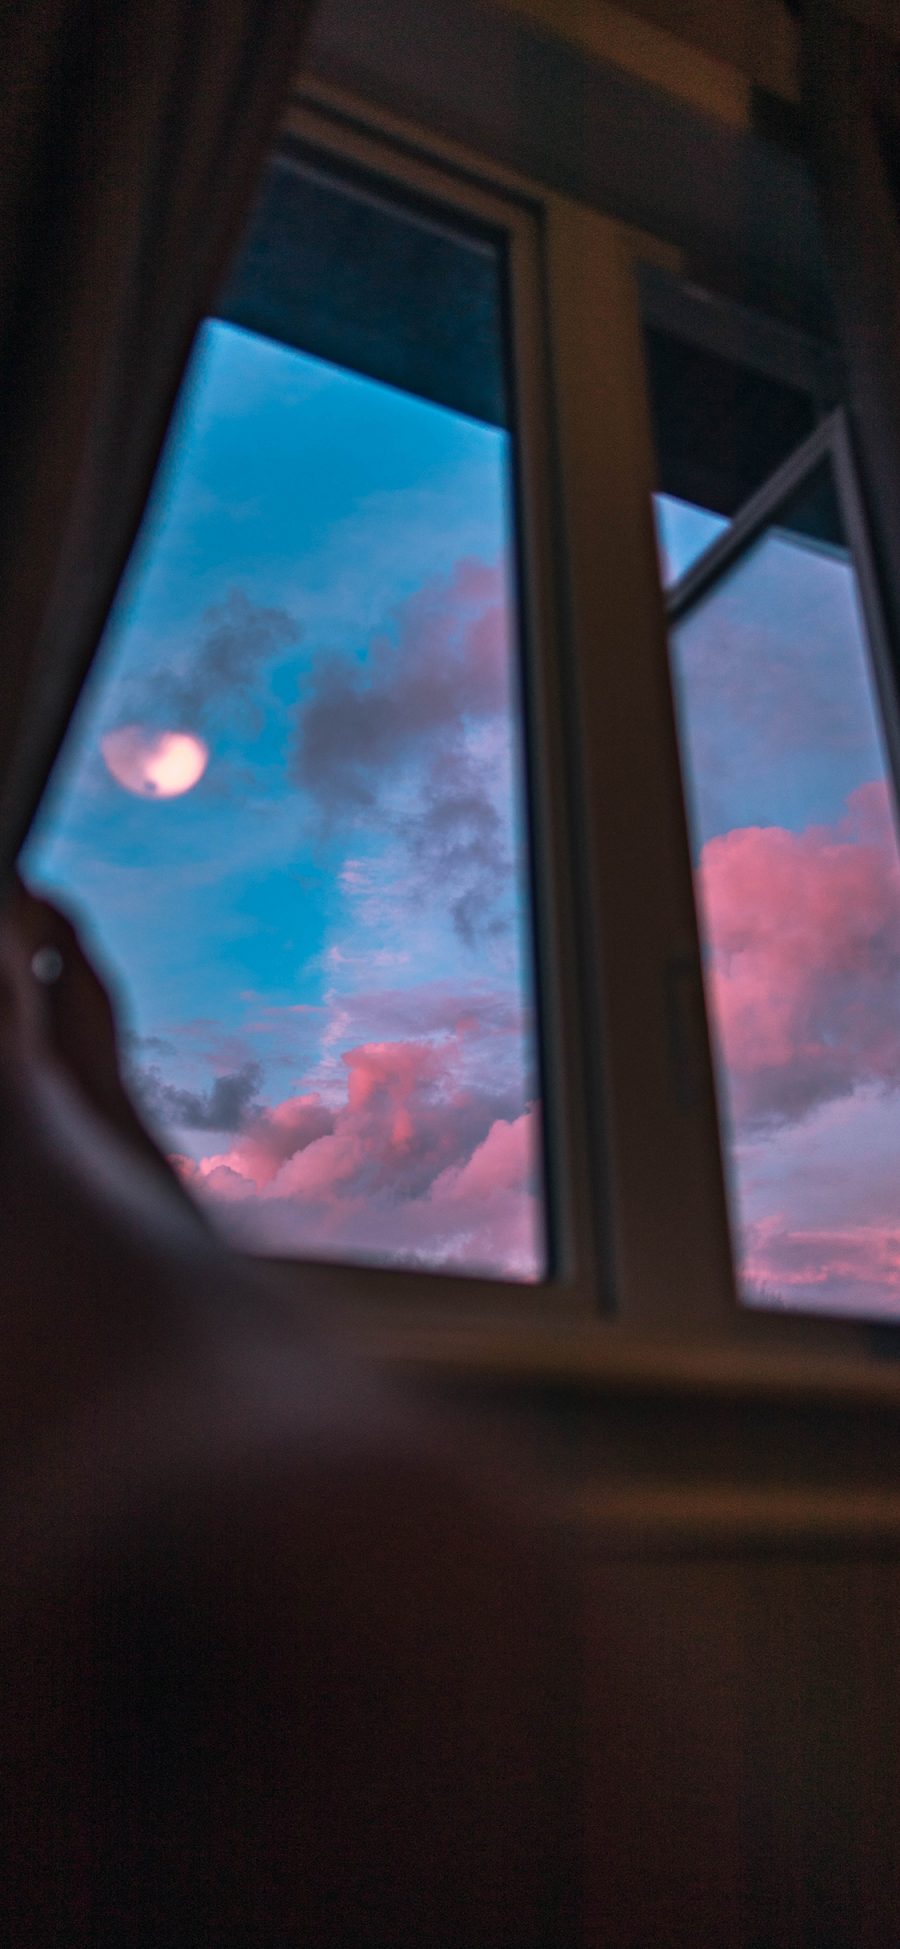 [2436×1125]窗外 云空 月亮 红云 傍晚美景 苹果手机壁纸图片